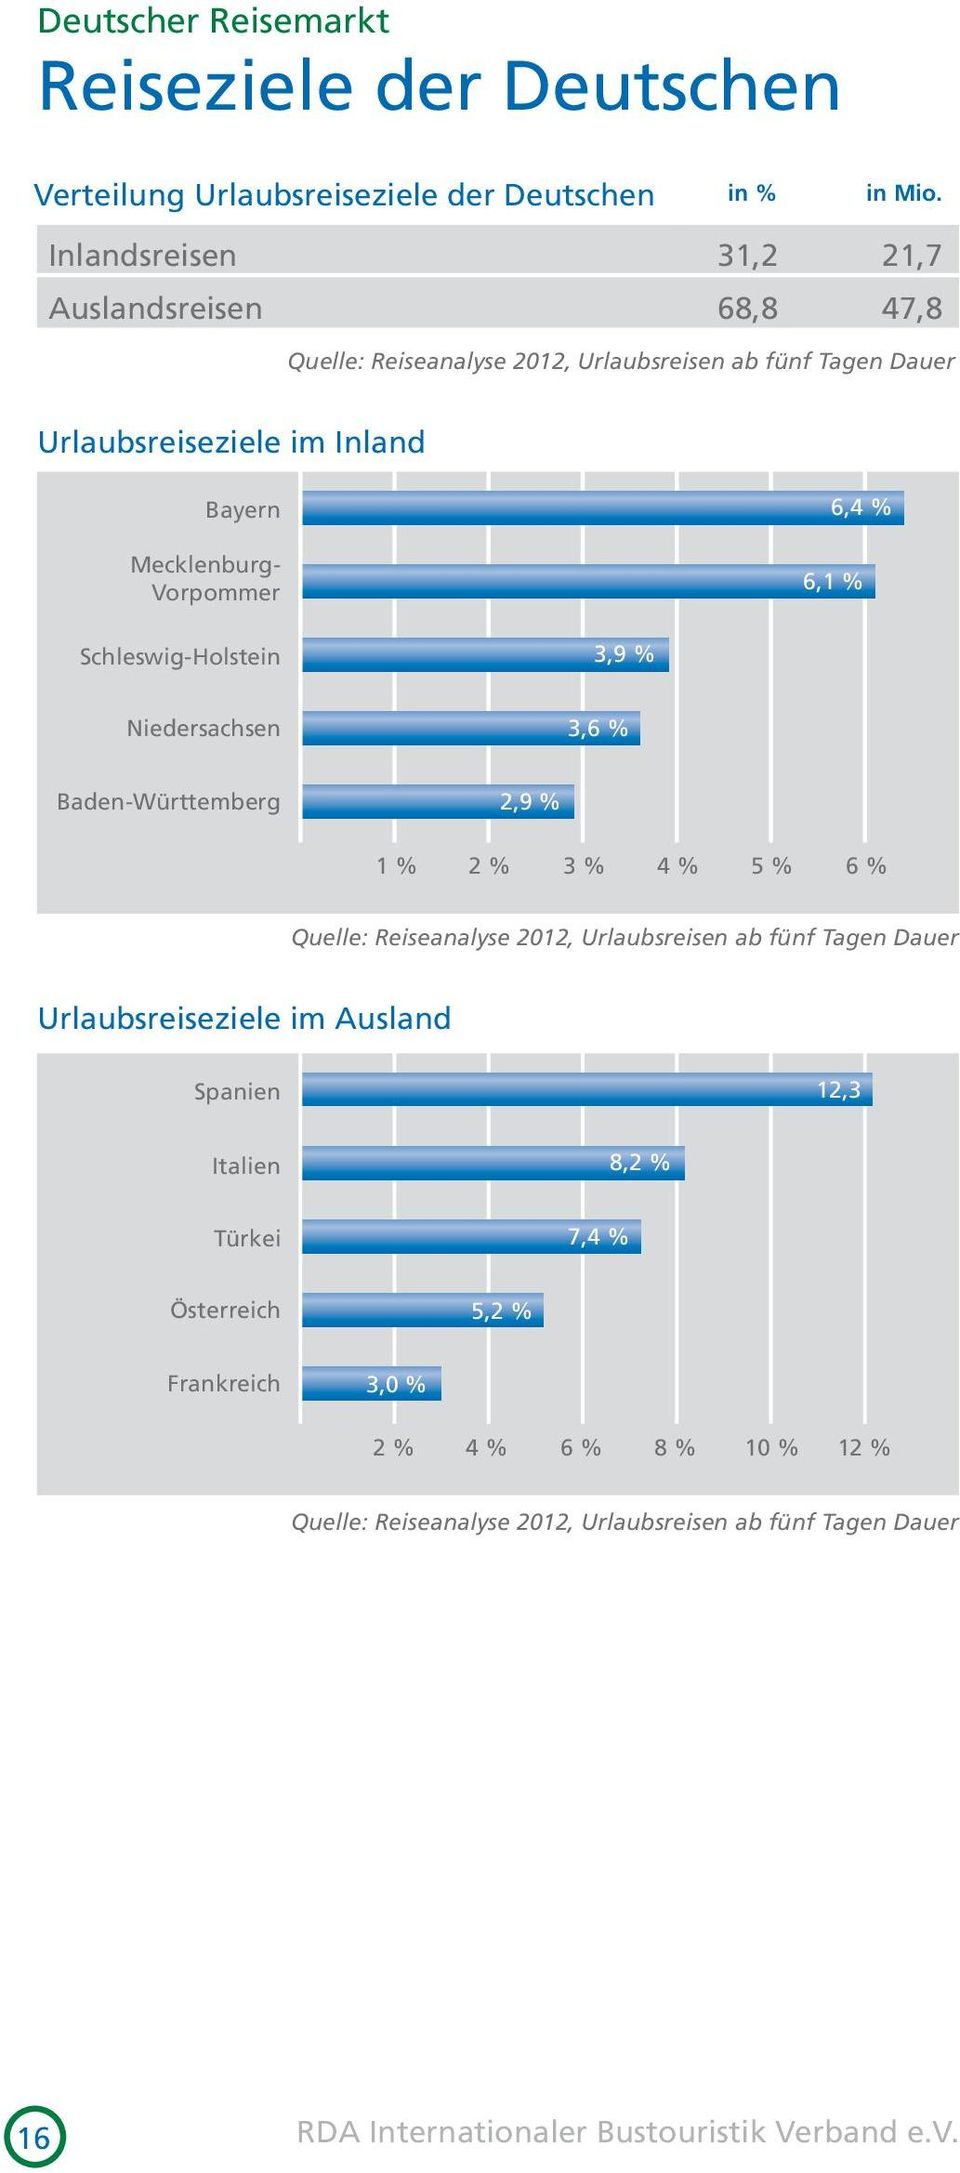 6,4 % 6,1 % Schleswig-Holstein 3,9 % Niedersachsen 3,6 % Baden-Württemberg 2,9 % 1 % 2 % 3 % 4 % 5 % 6 % Quelle: Reiseanalyse 2012, Urlaubsreisen ab fünf Tagen Dauer